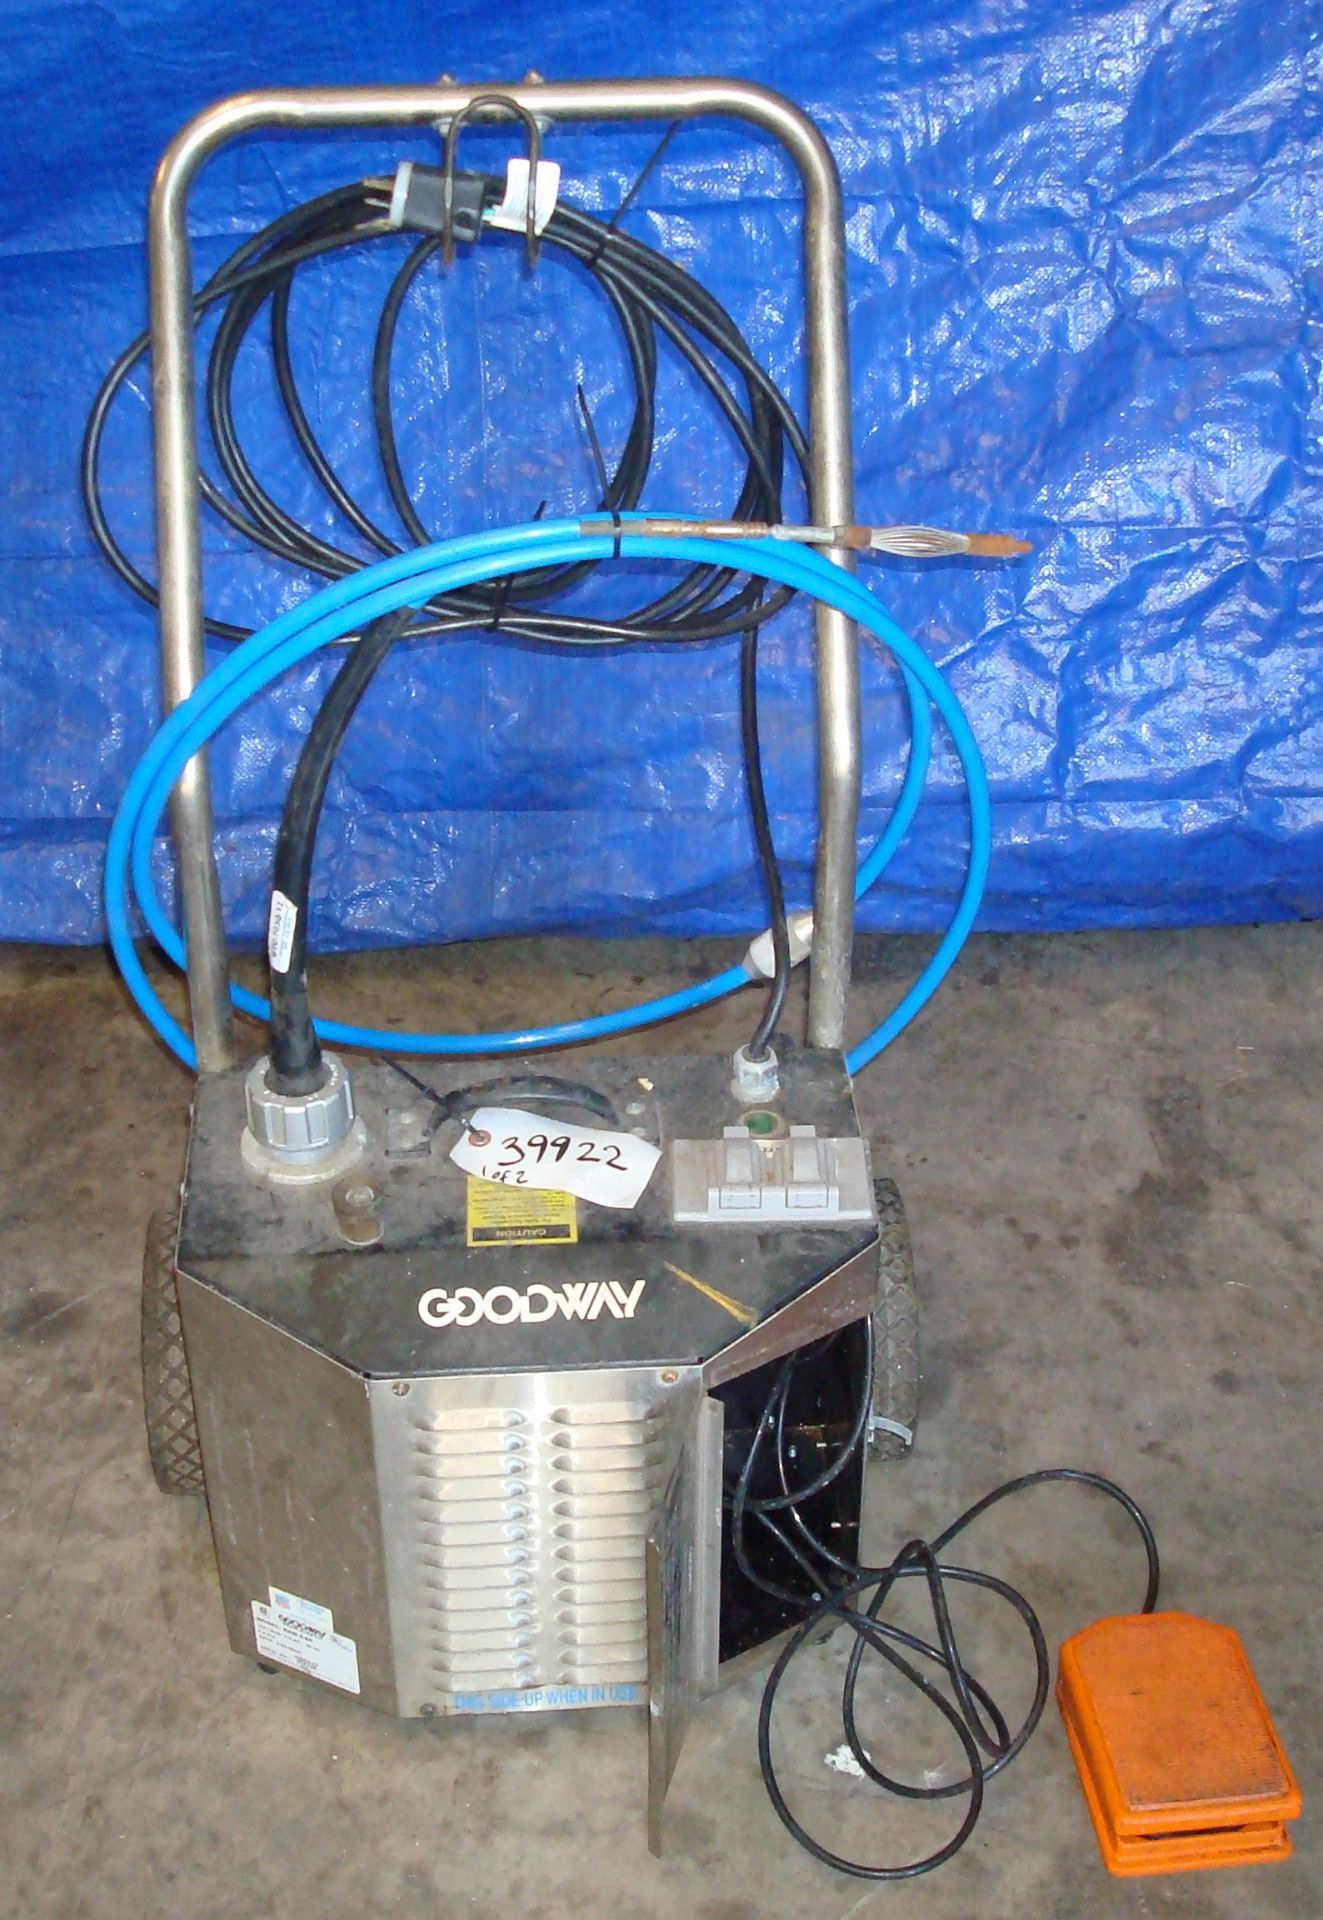 Goodway model RAM-4-60 rotary chiller tube cleaner